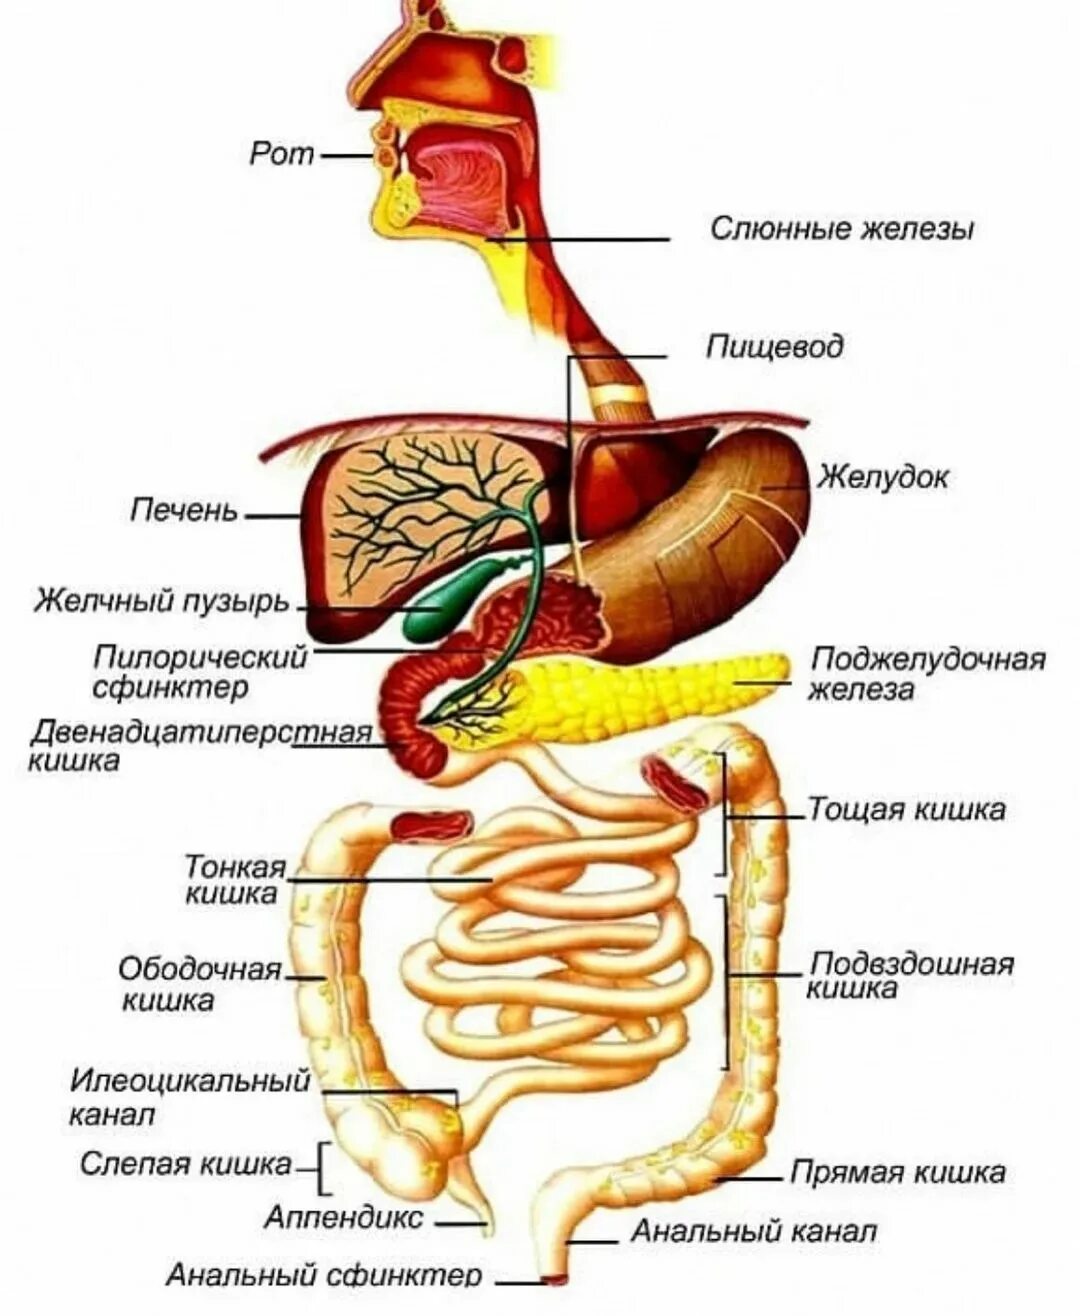 Пищевод кишечник. Строение желудочно-кишечного тракта. Схема желудочно-кишечного тракта. Анатомия пищеварительного тракта человека. Строение отделов желудочно-кишечного тракта.